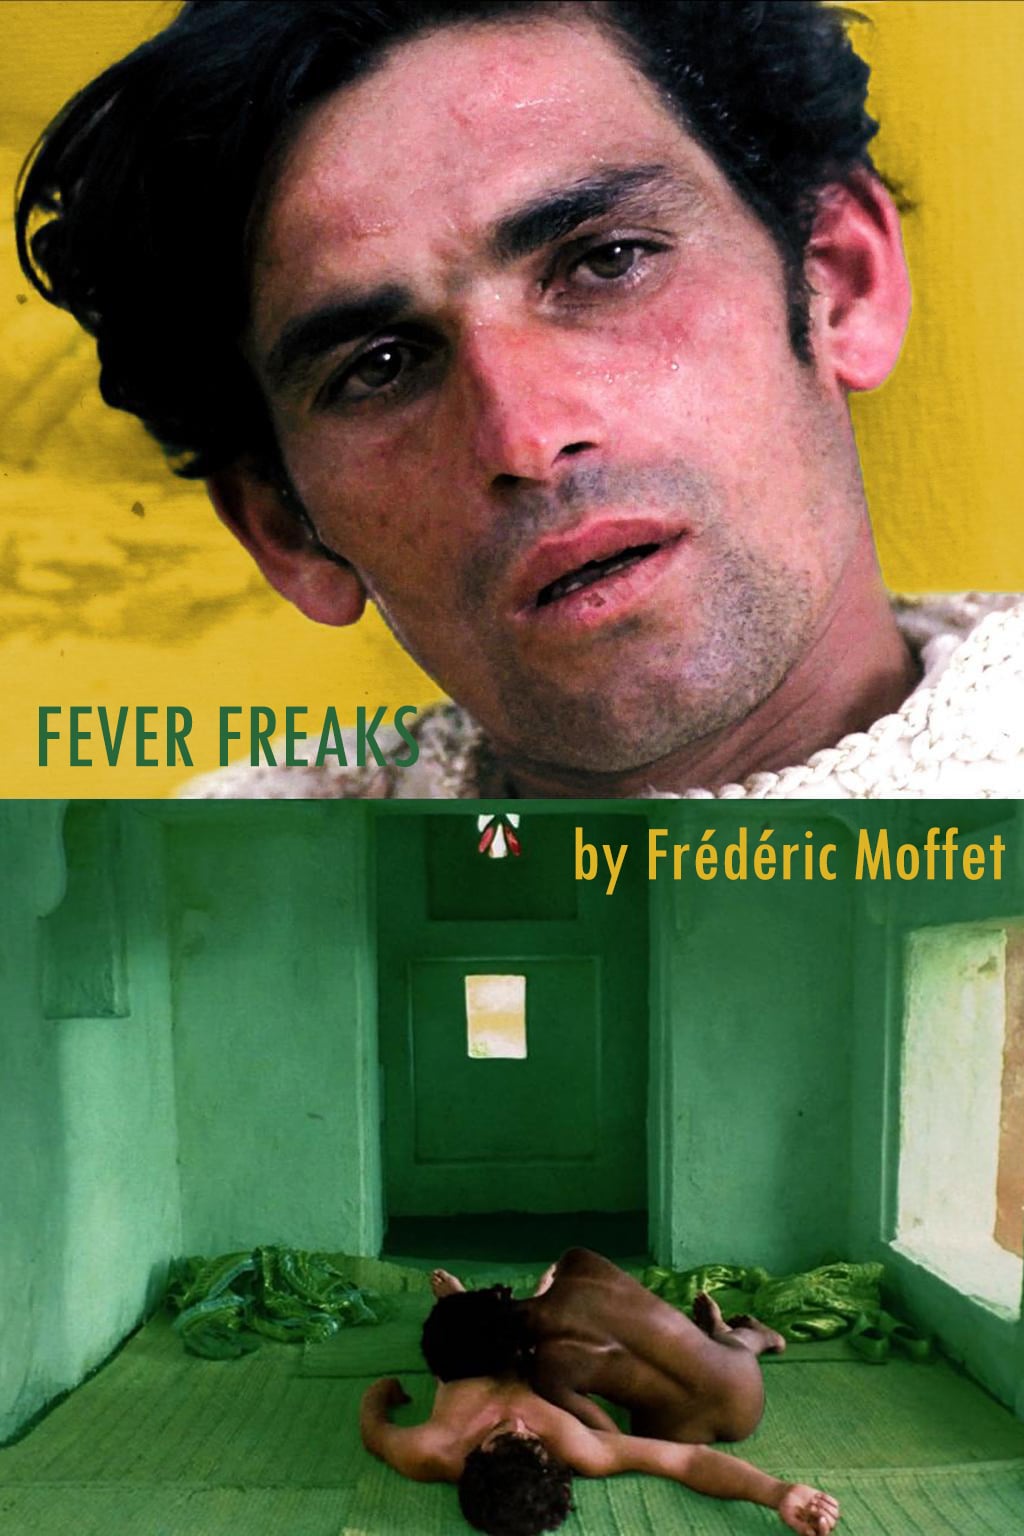 Fever Freaks